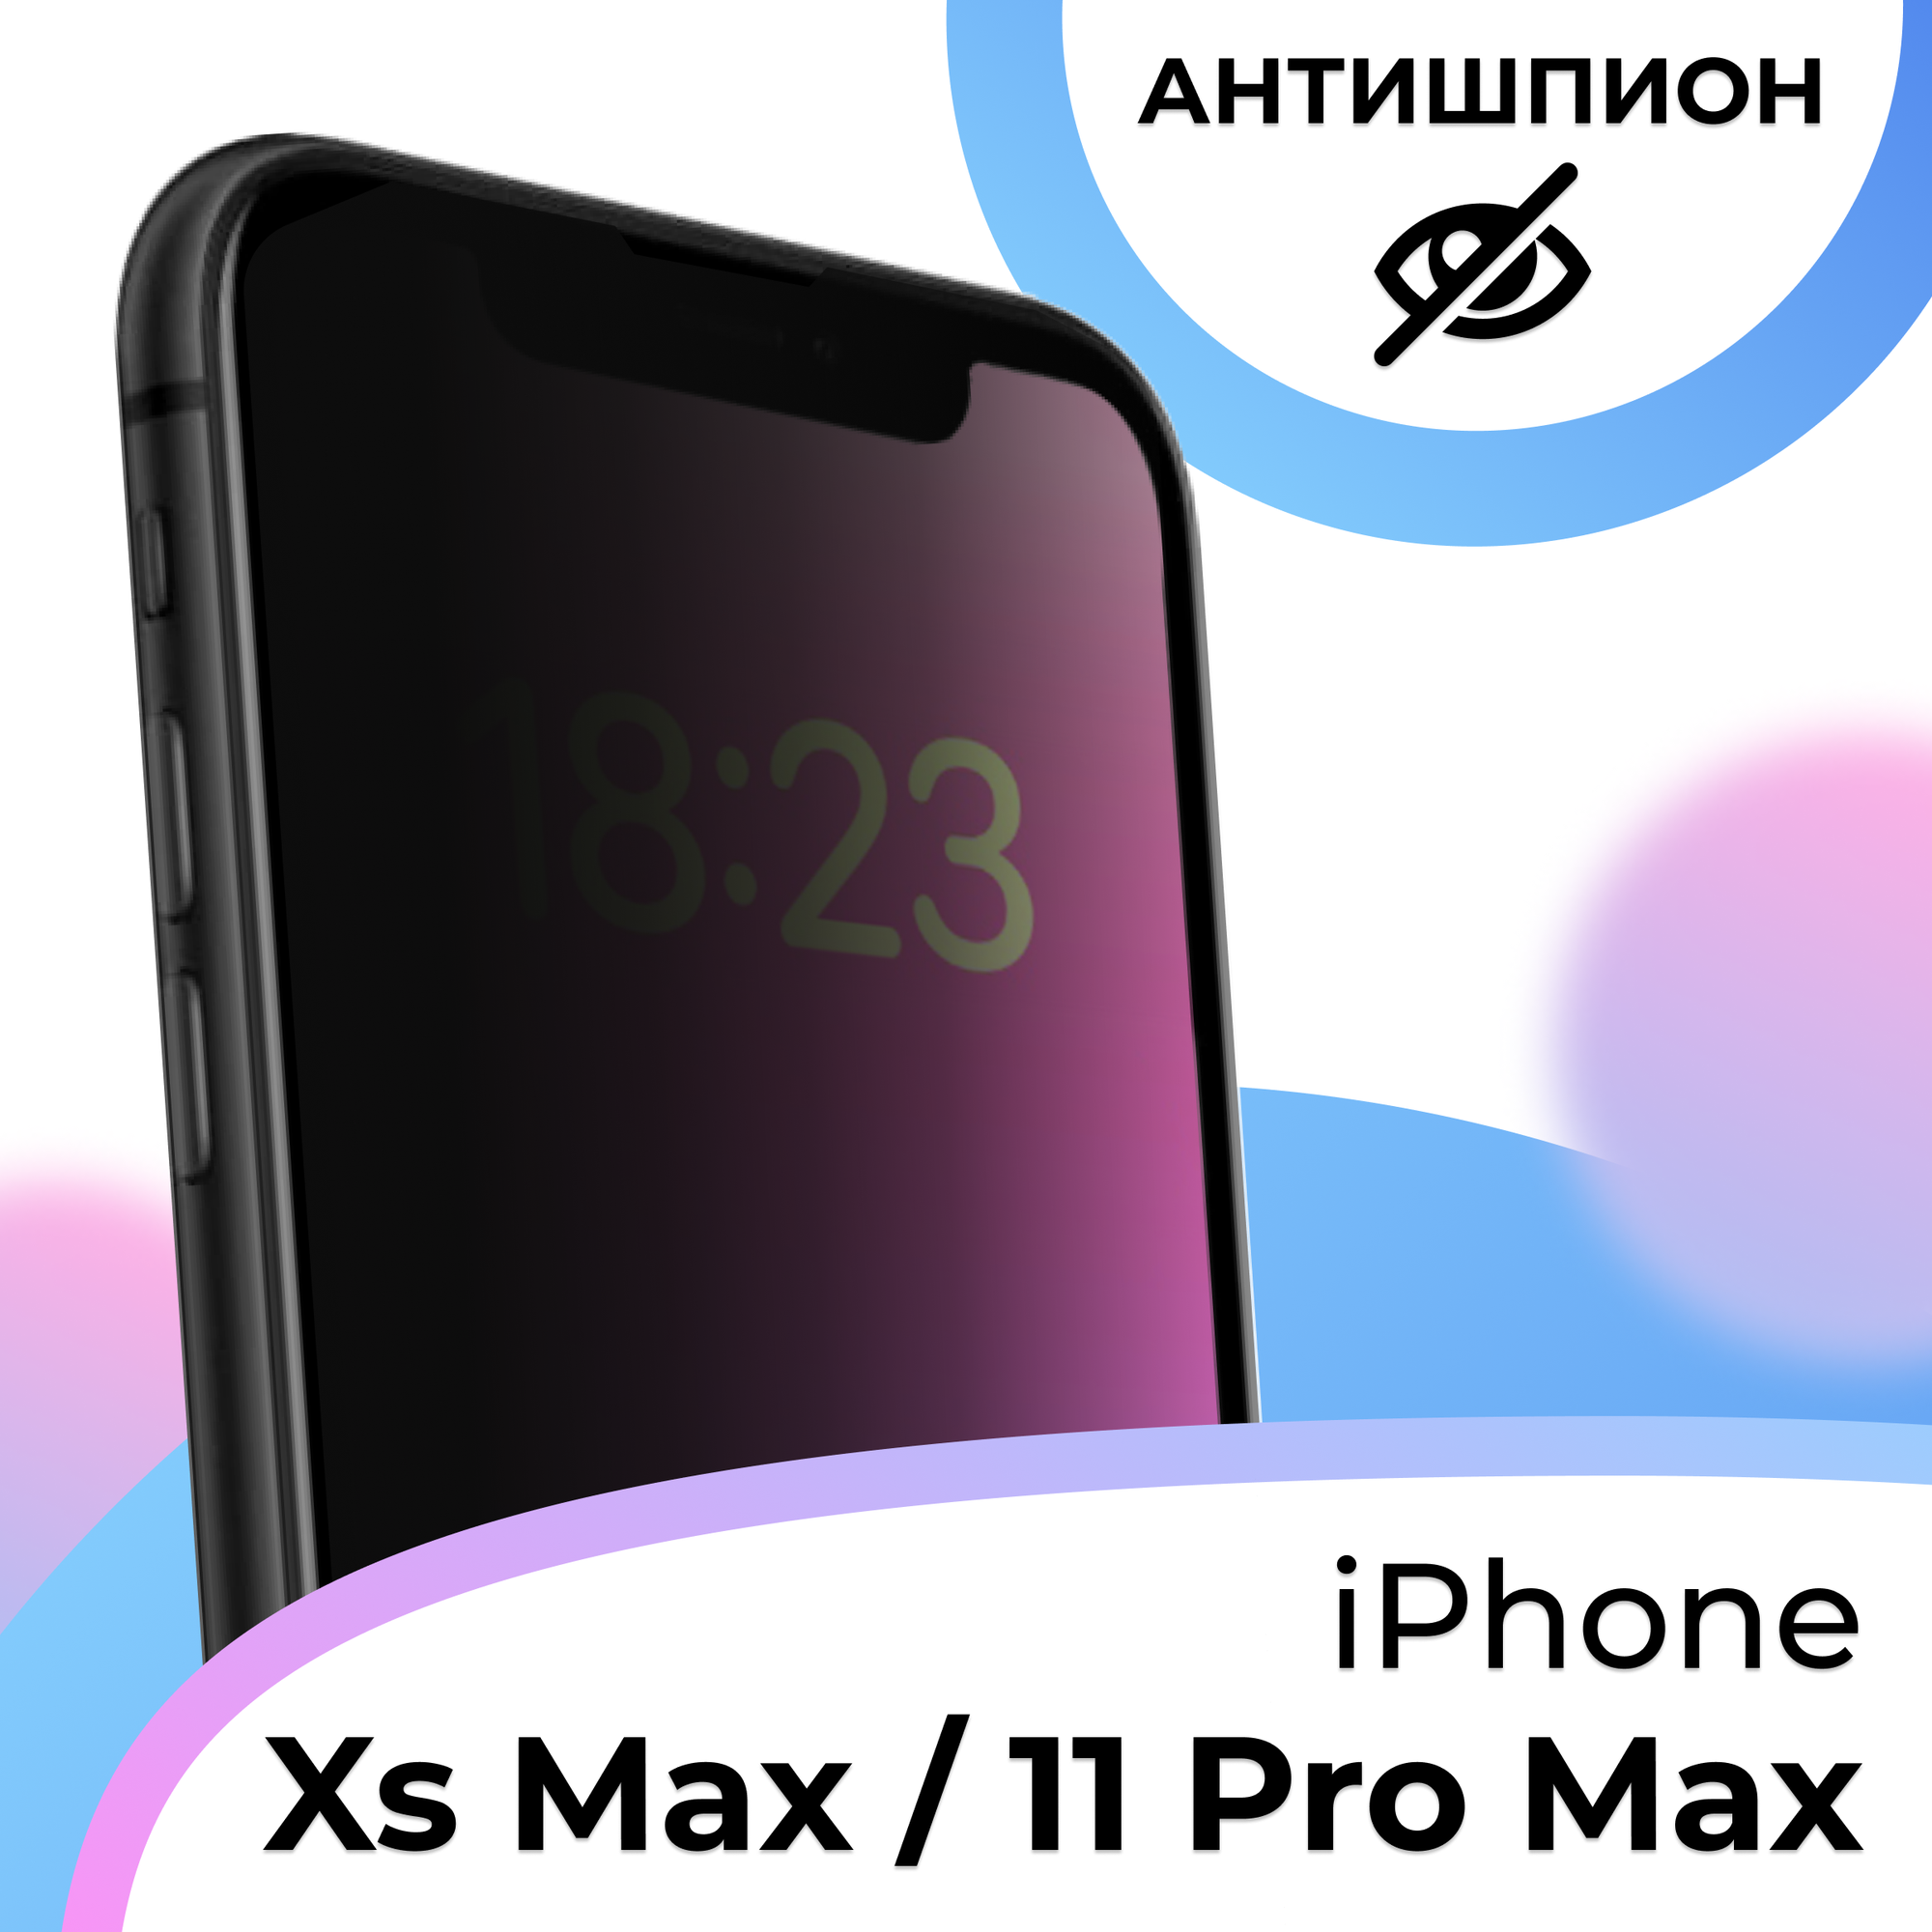 Противоударное защитное стекло Антишпион для смартфона Apple iPhone XS Max и iPhone 11 Pro Max / Эпл Айфон ХС Макс и Айфон 11 Про Макс